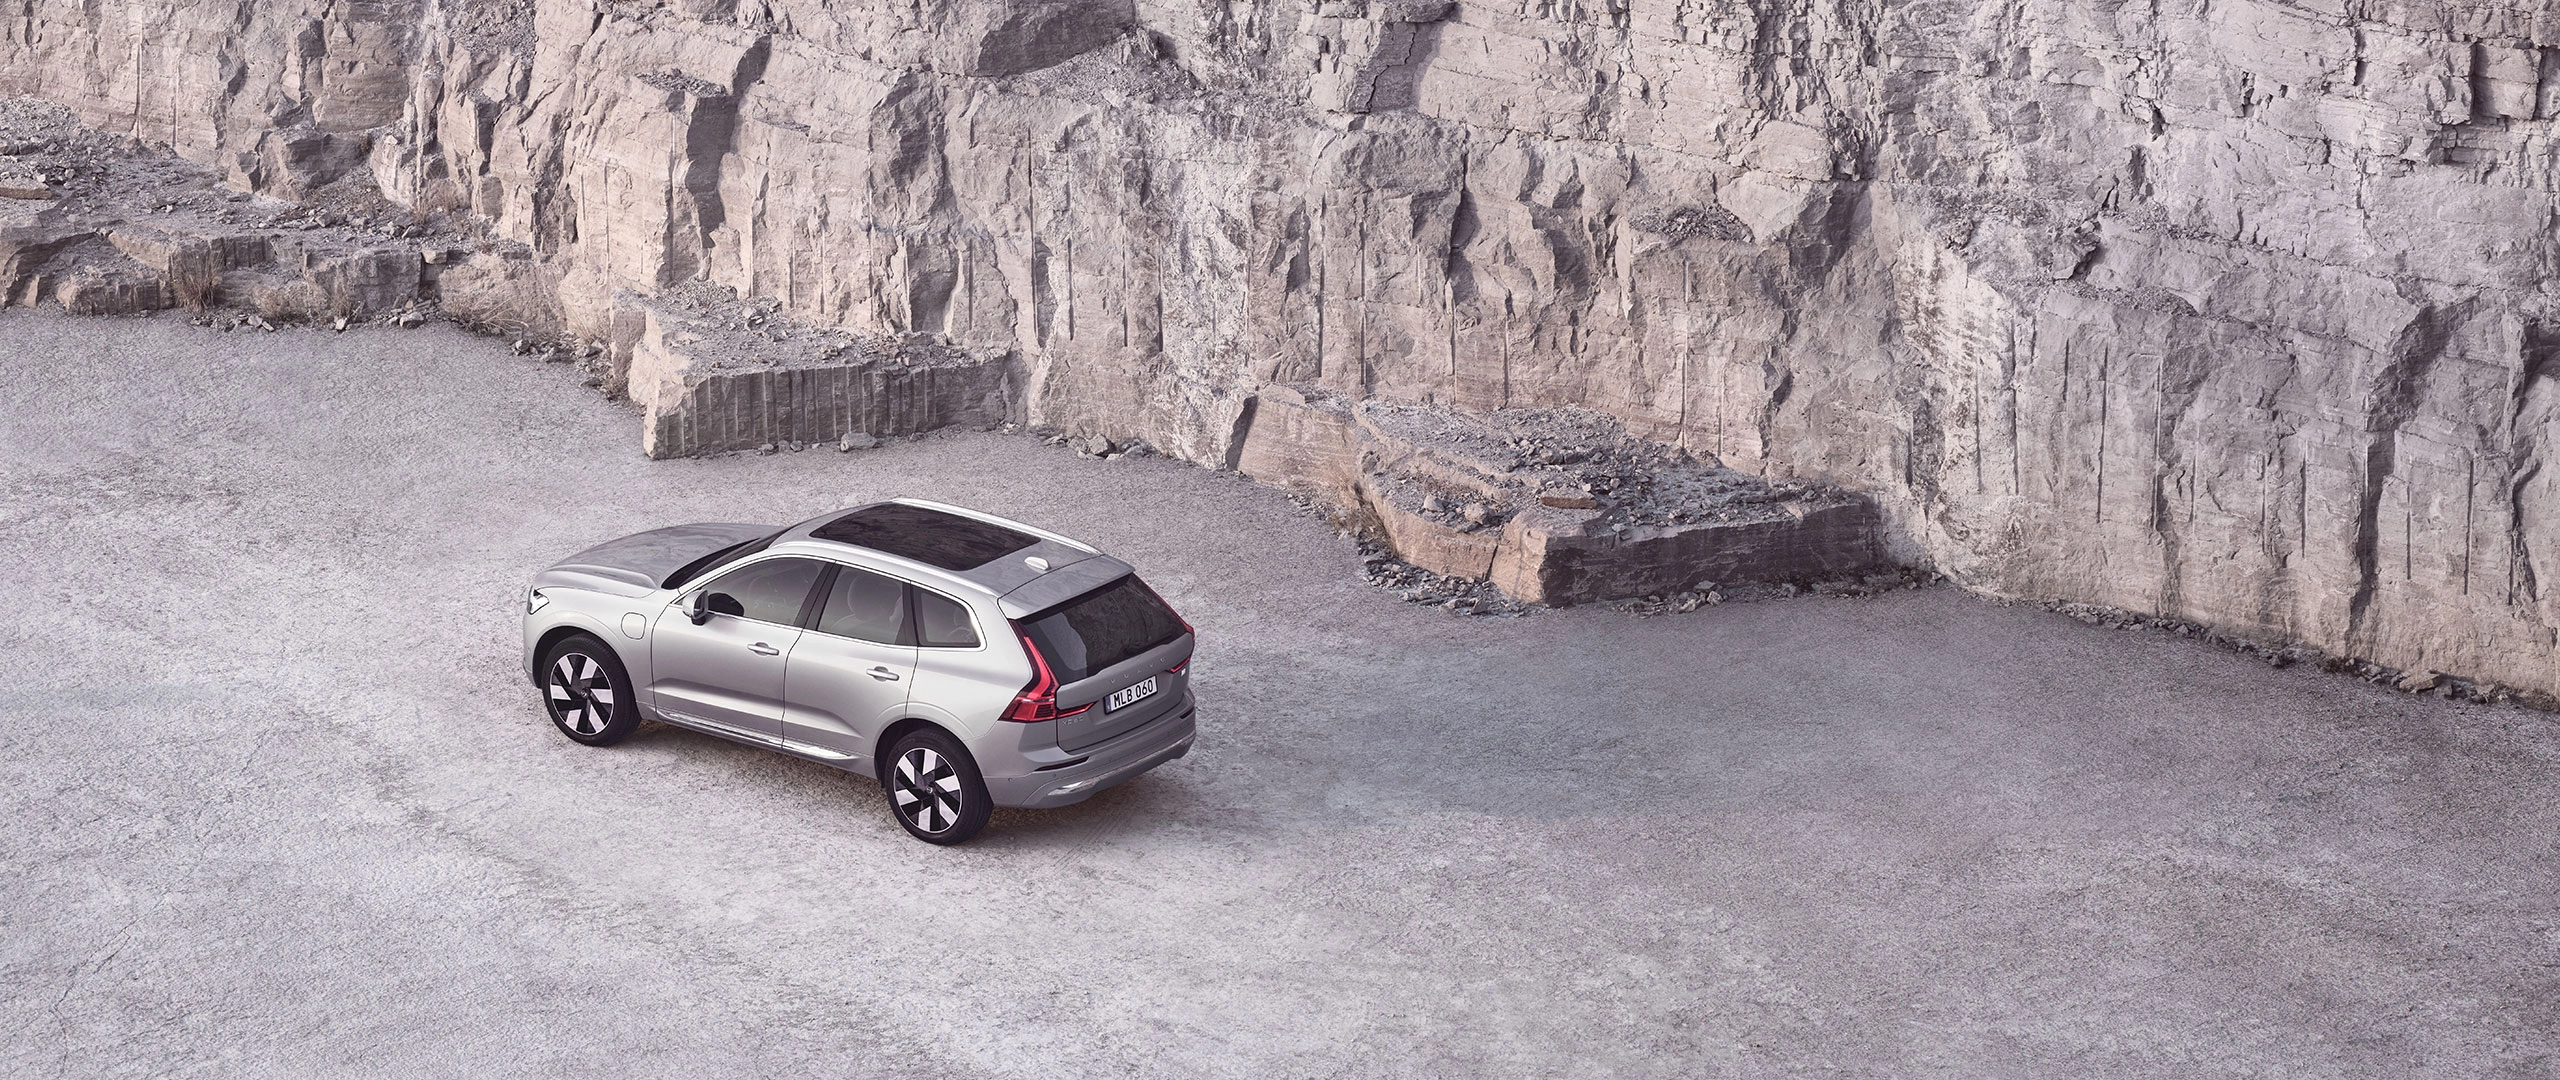 Pohled z výšky na SUV Volvo ve skalnatém prostředí